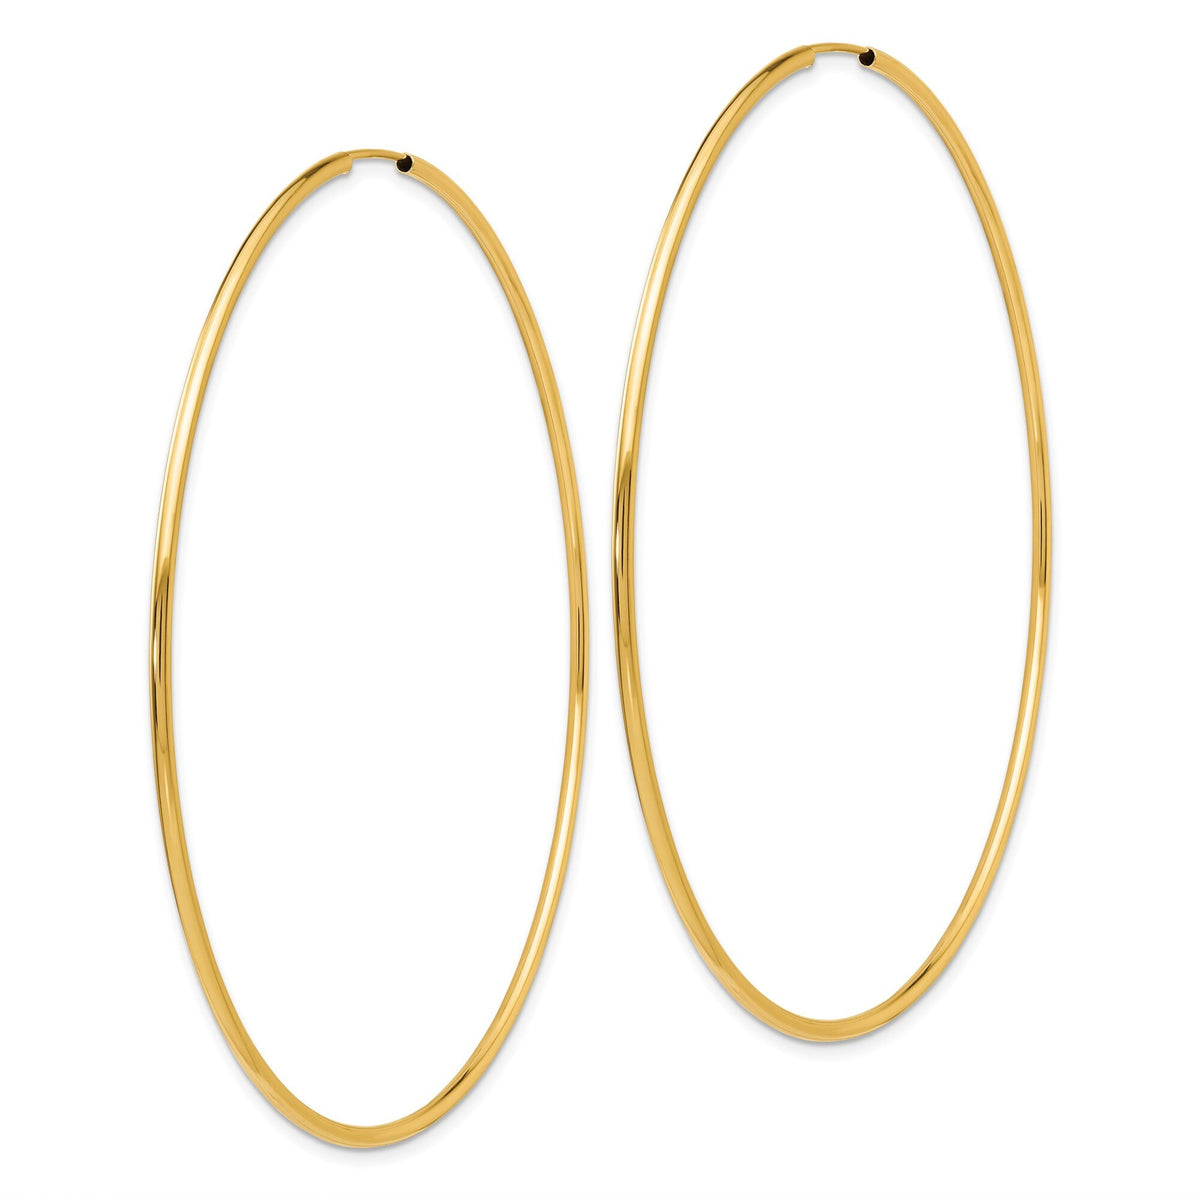 14K Gold Large Endless Hoop Earrings - Gift Box Included - Large Hoops 14k Yellow Gold Hoop Earrings 14k White Gold Hoops